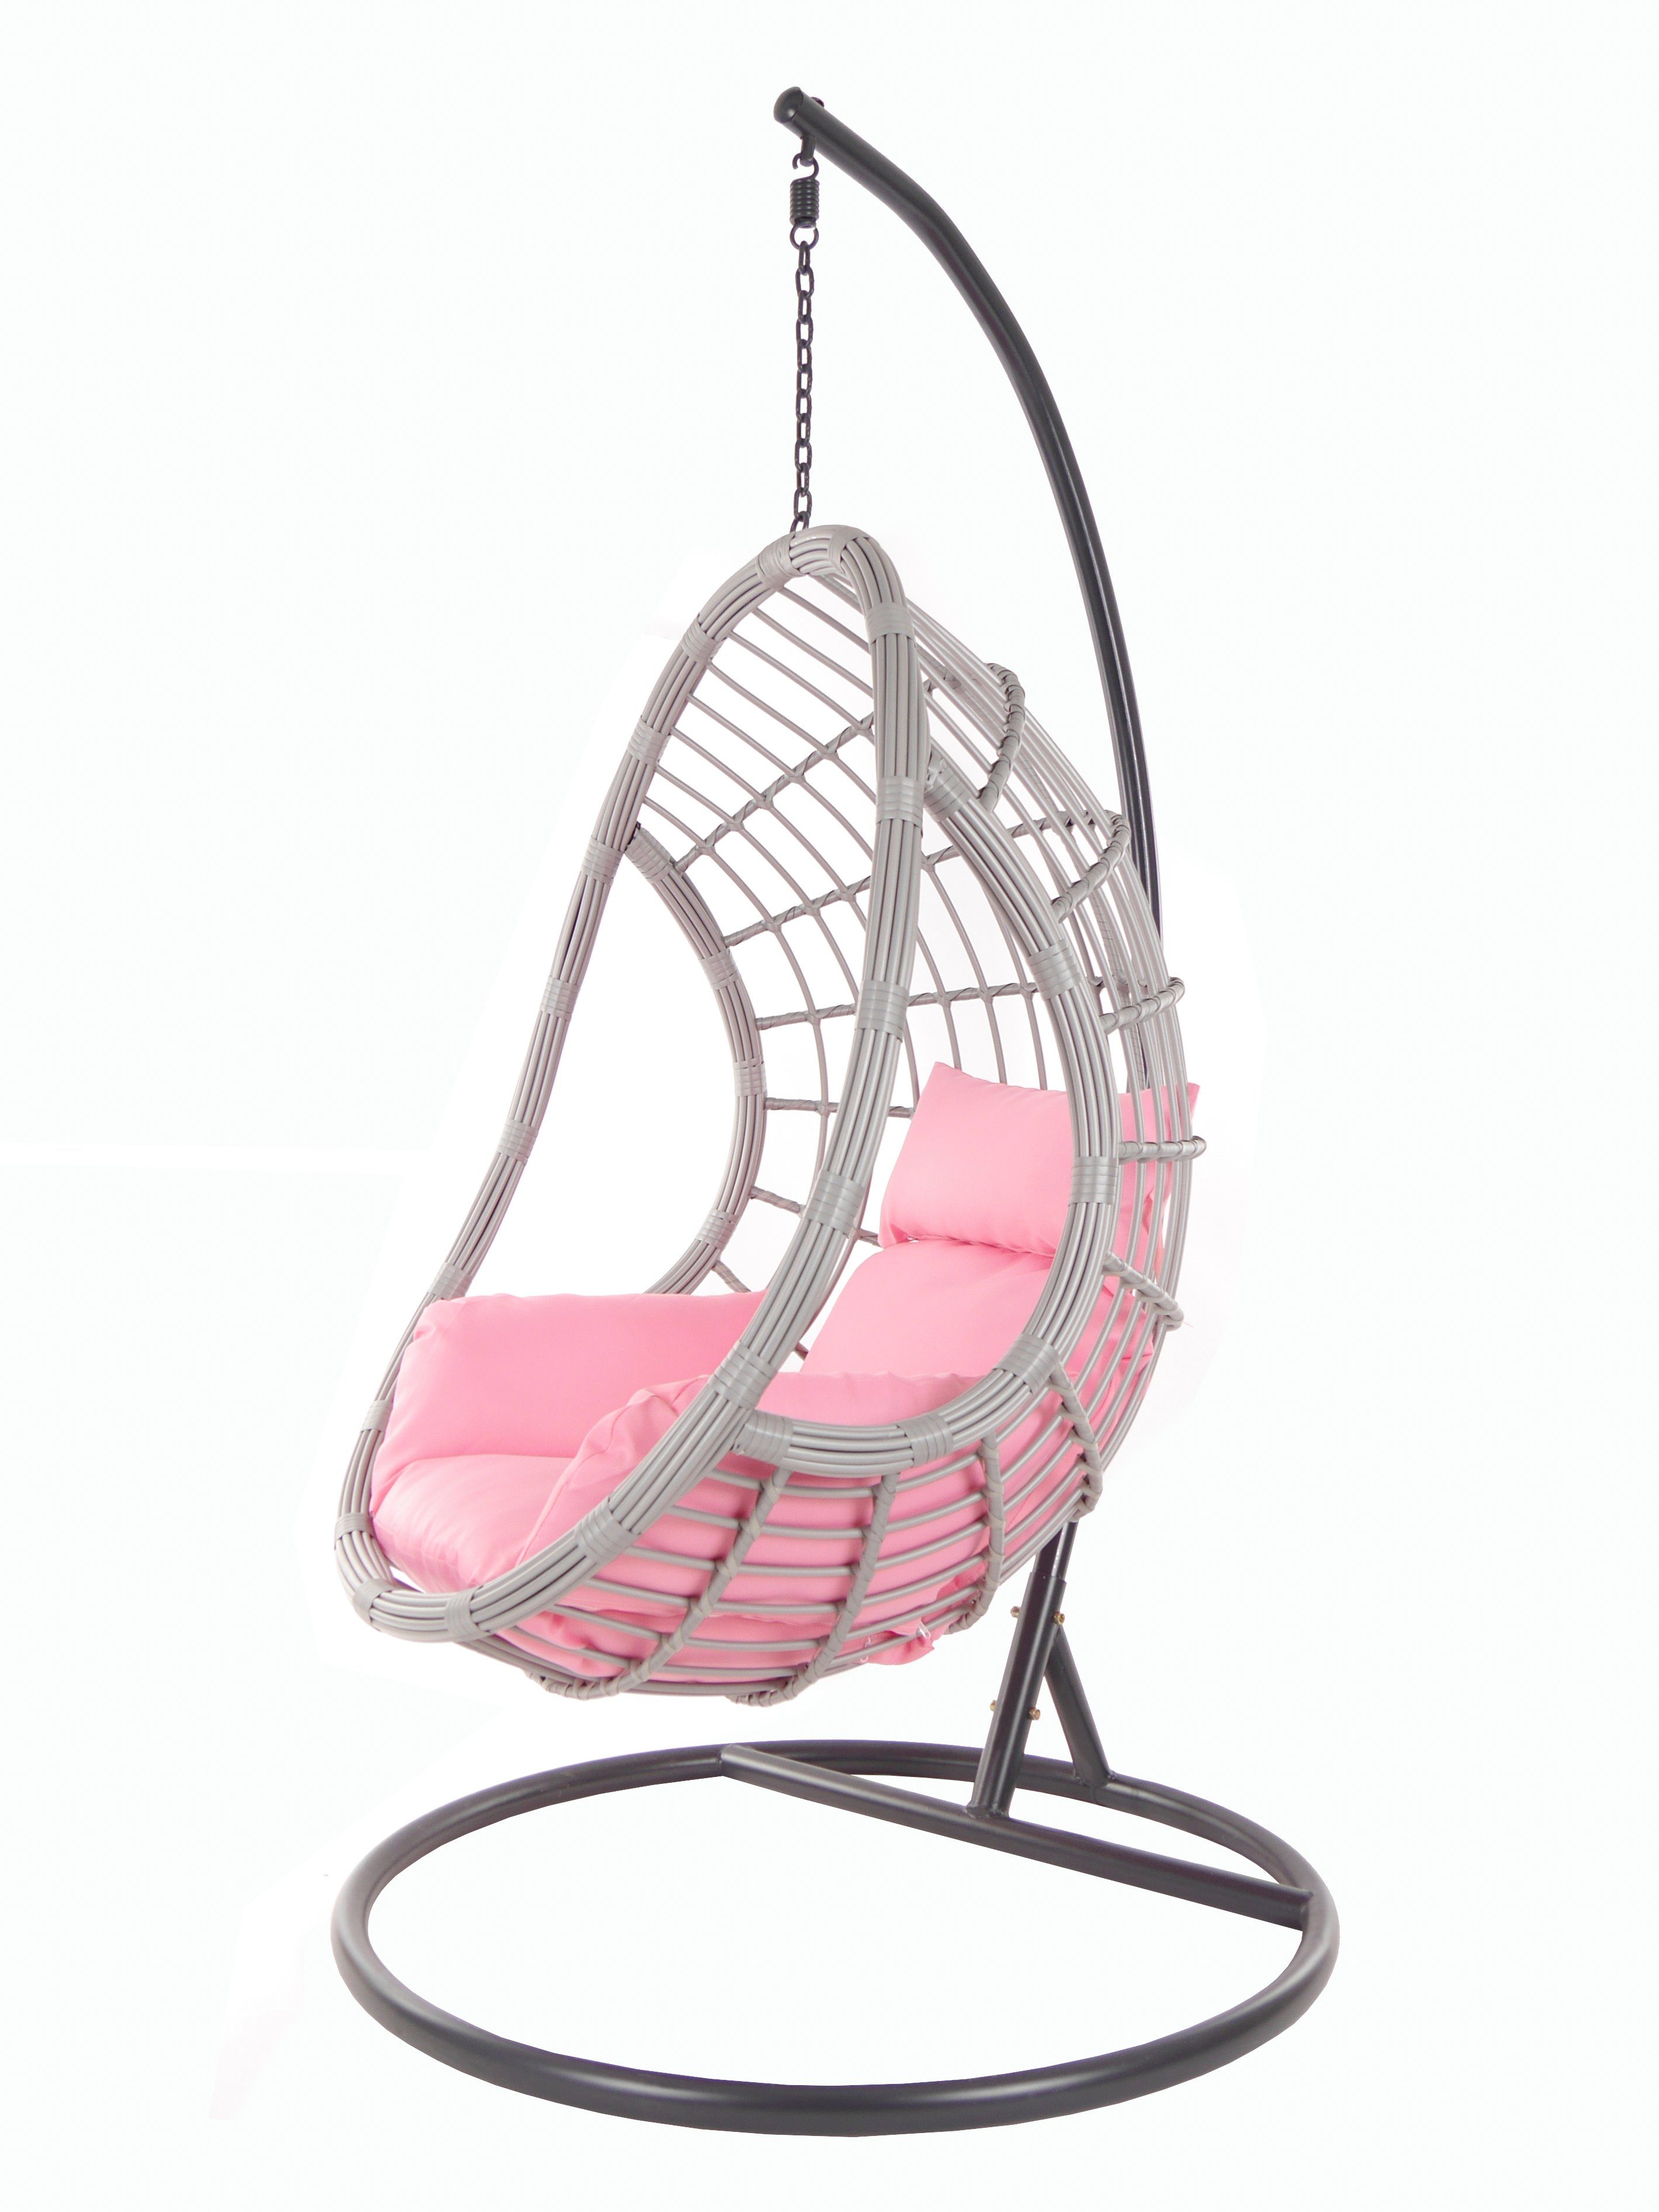 KIDEO Hängesessel PALMANOVA lightgrey, Schwebesessel mit Gestell und Kissen, Swing Chair, Loungemöbel